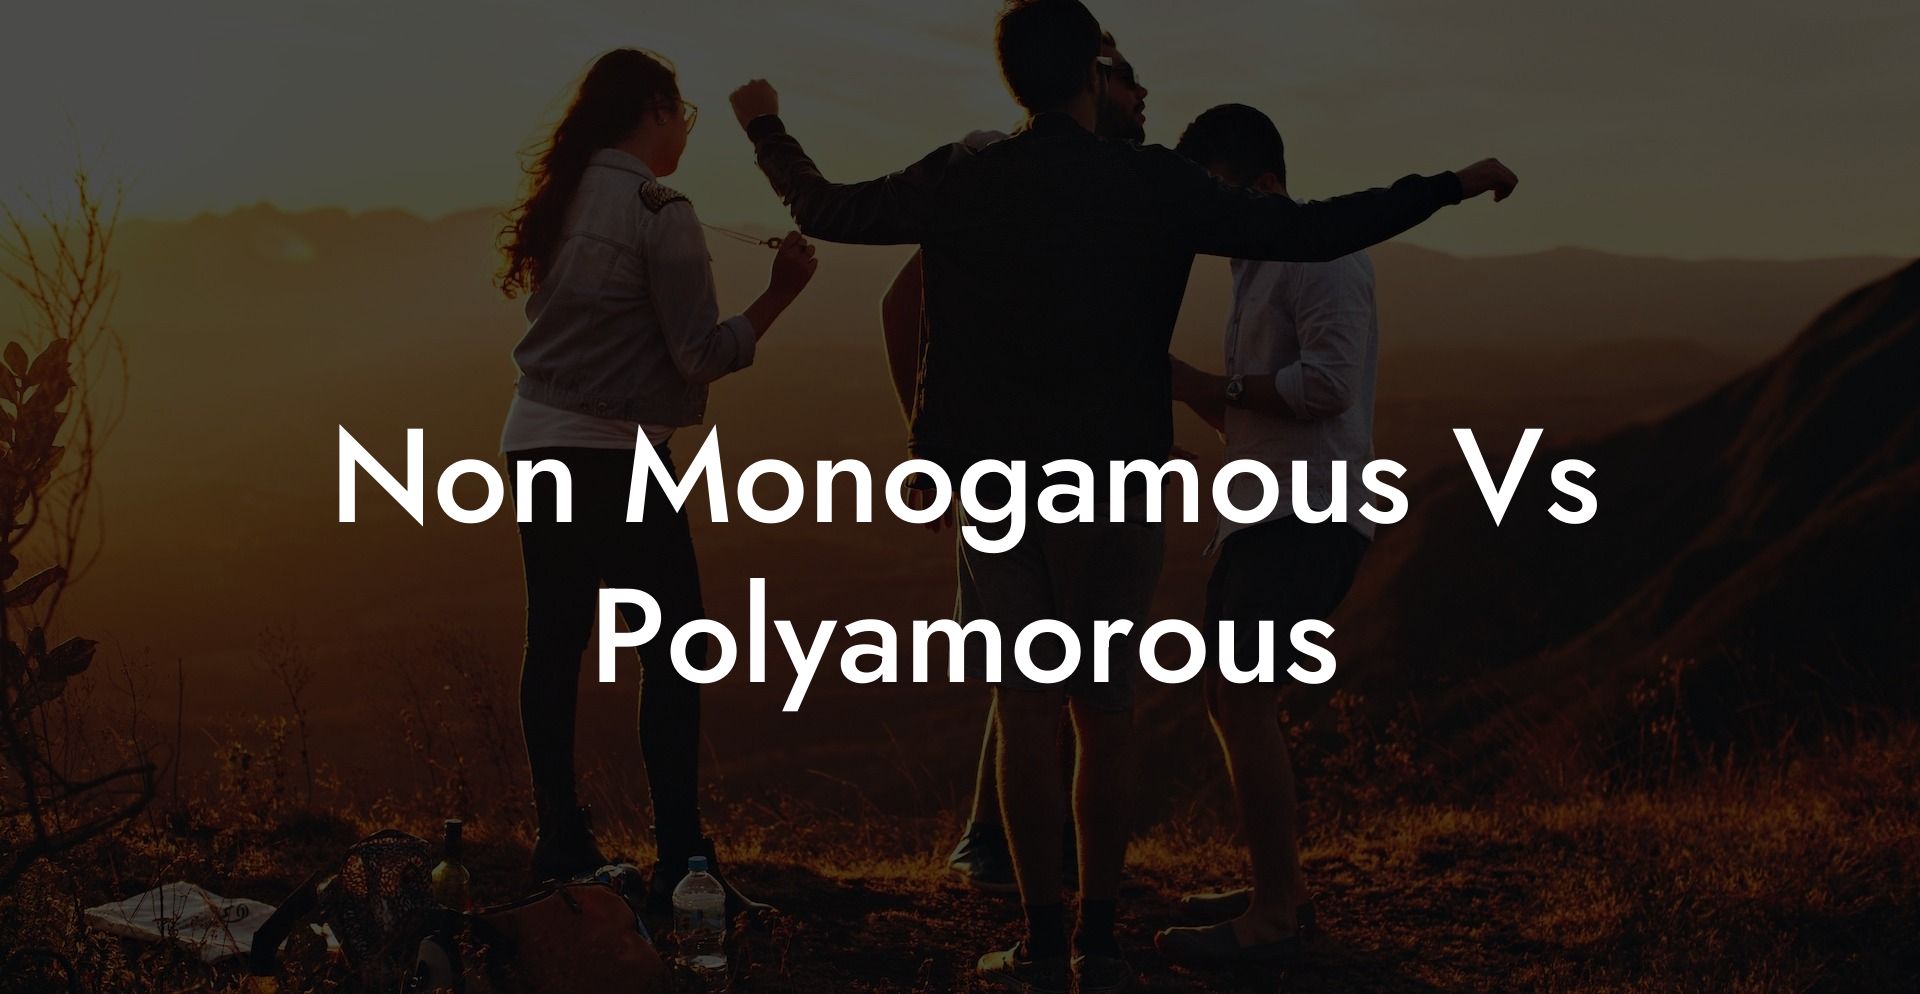 Non Monogamous Vs Polyamorous